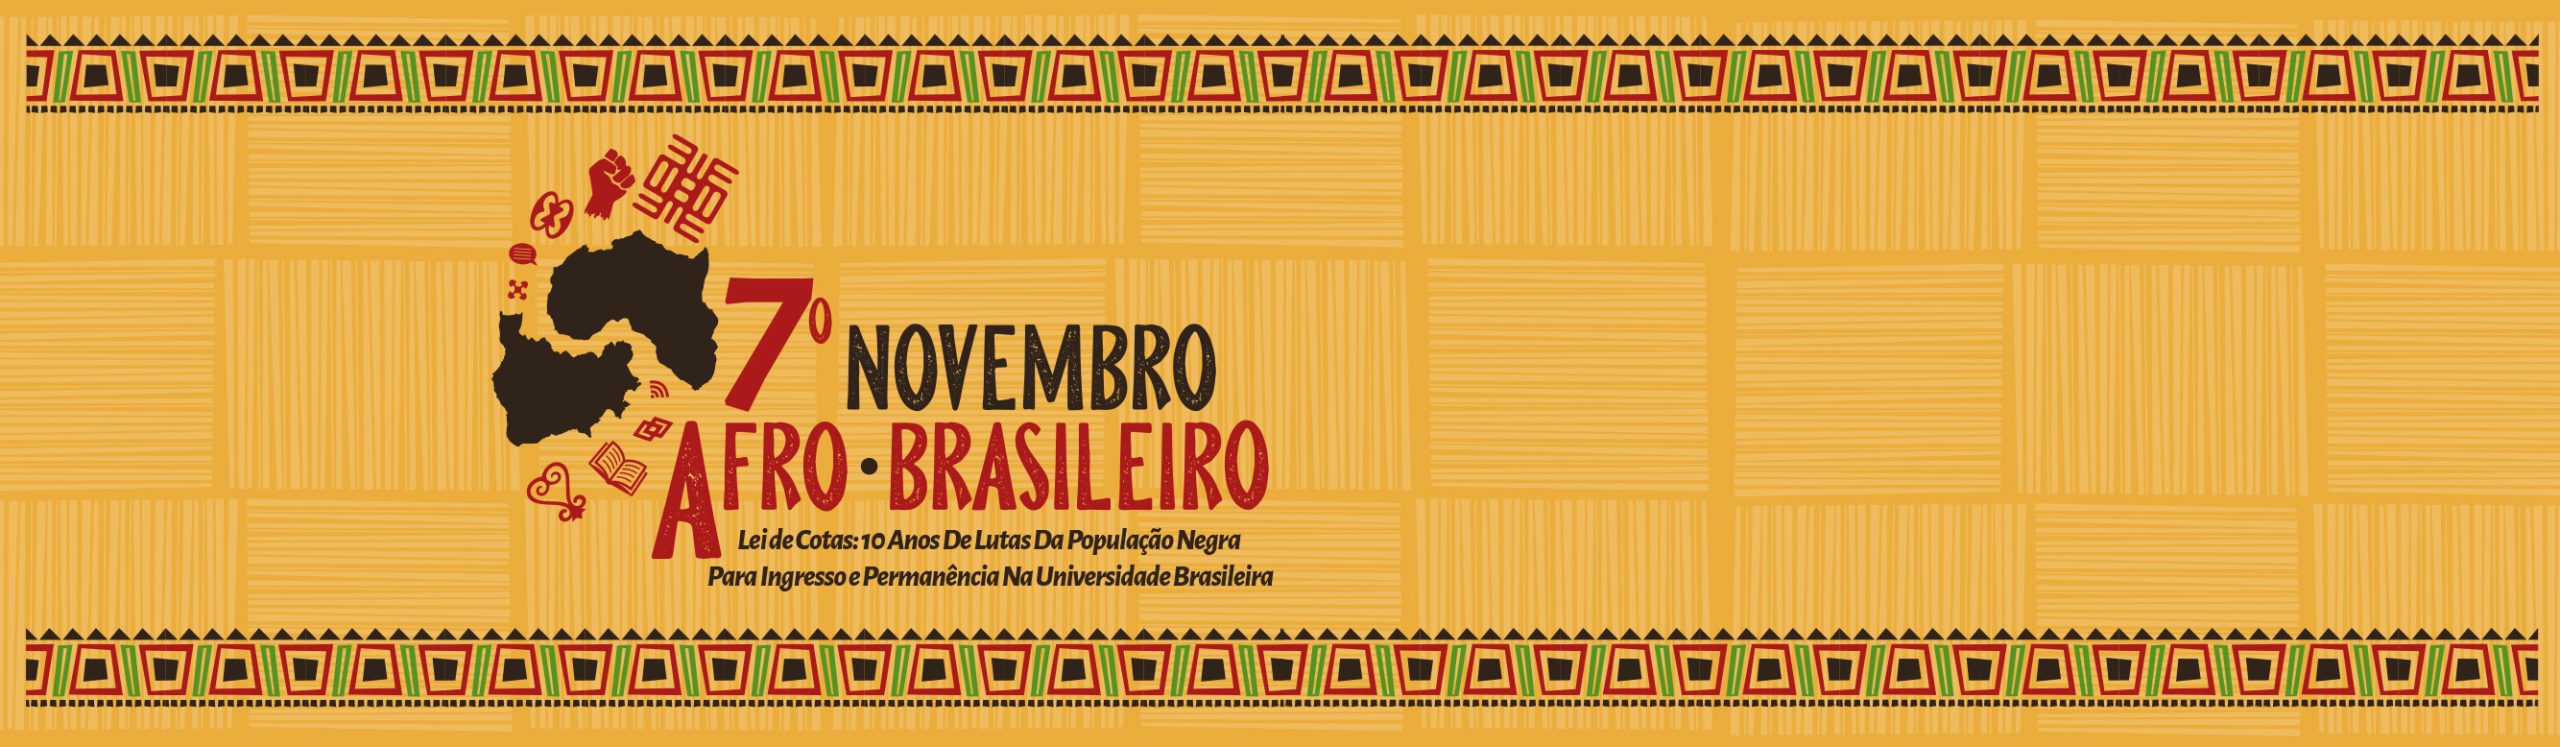 Imagem referente a postagem de título 7º Novembro Afro-Brasileiro começa no próximo dia 21. In...